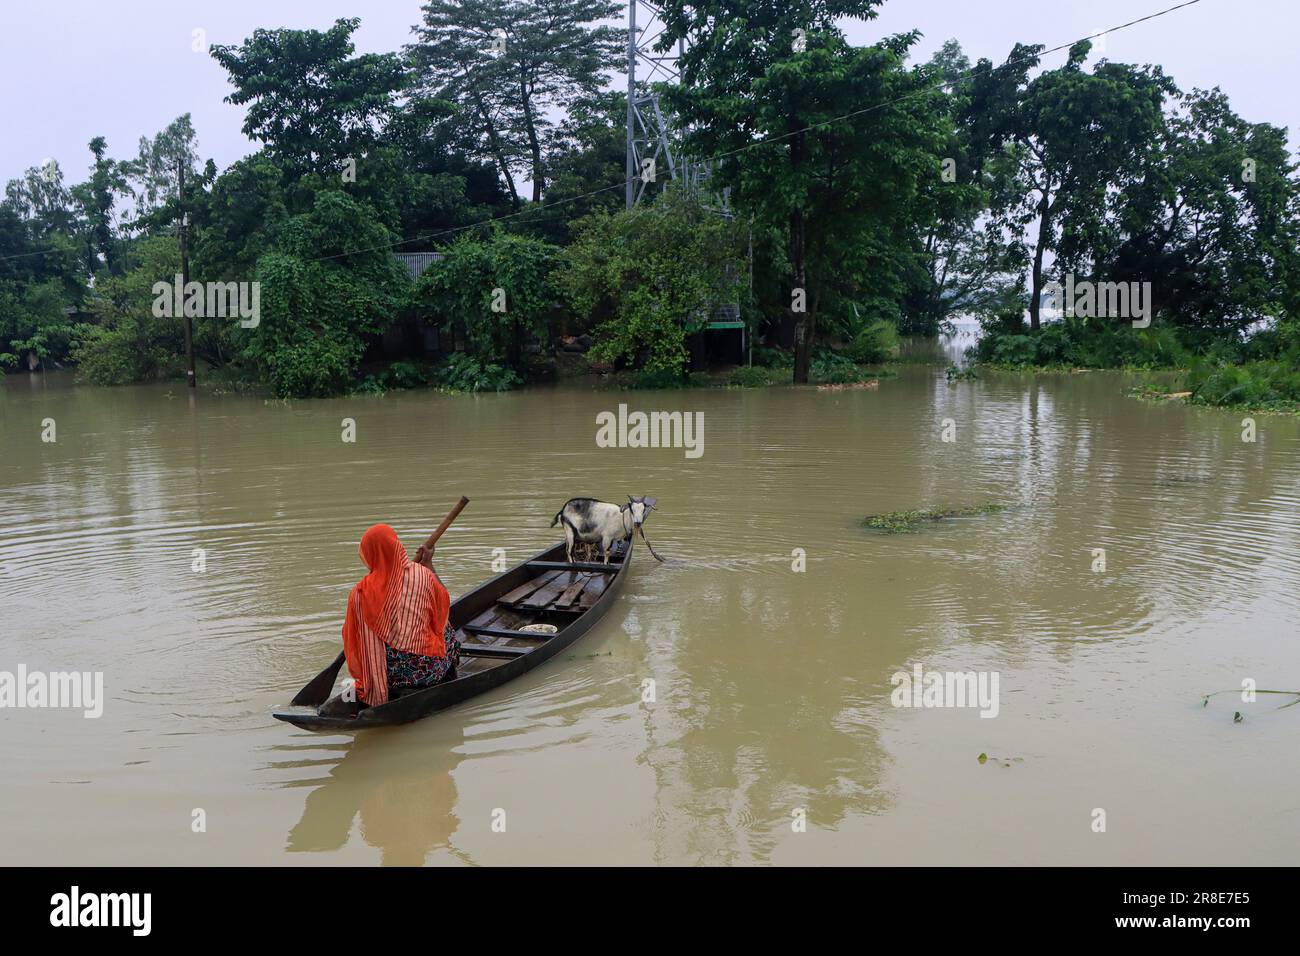 En raison des pluies continues et des pentes de colline, le niveau d'eau des rivières et des cours d'eau augmente et l'eau entre dans la localité. Il y a un risque d'inondation. Une femme rogne un bateau vers le sol supérieur pour nourrir ses chèvres. Nandir Gao Union de Goainghat Upazila. Sylhet, Bangladesh. Banque D'Images